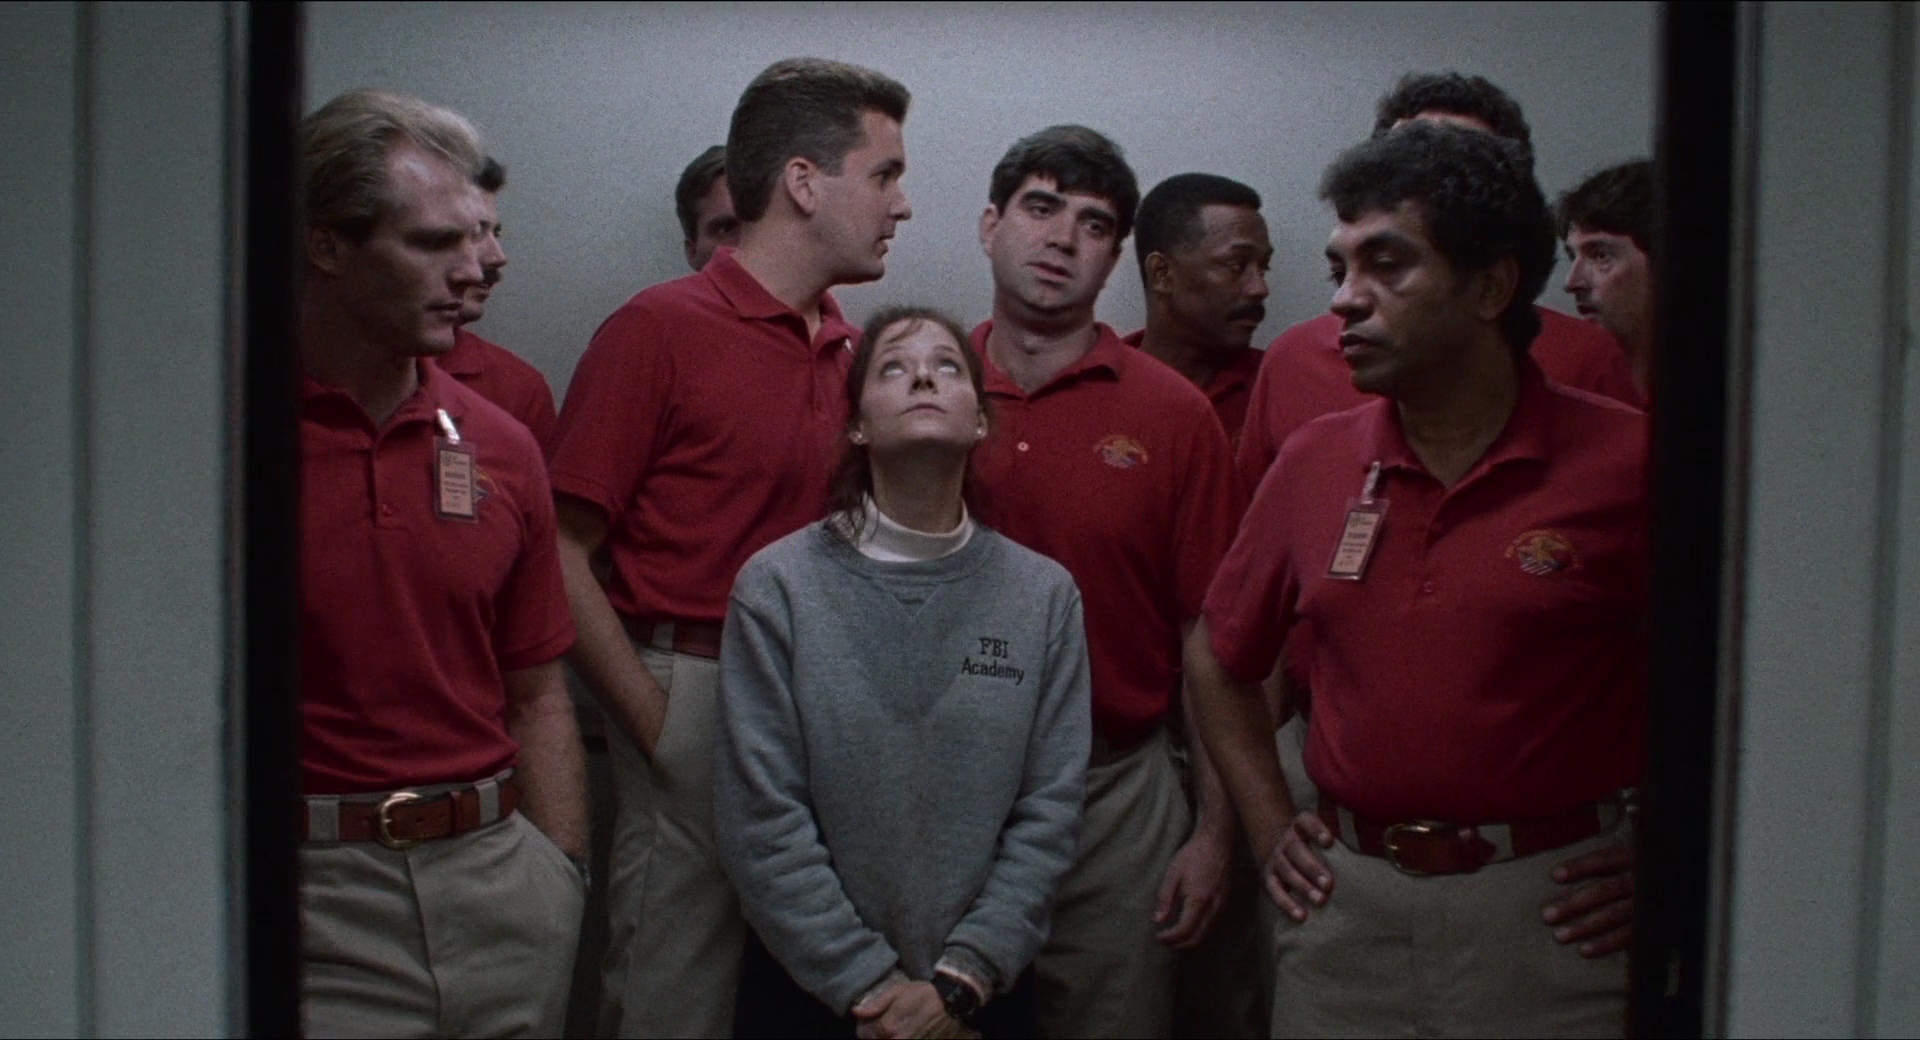 Cena do filme O Silêncio dos Inocentes. Jodie Foster está no centro da imagem, dentro de um elevador. Ela usa moletom cinza com uma camisa branca por baixo marcados com suor, calças pretas e suas mãos estão unidas na frente do corpo. Ao redor dela, vamos nove homens no pequeno espaço. Todos usam a mesma roupa: camisa polo vermelha e calça cáqui bege.